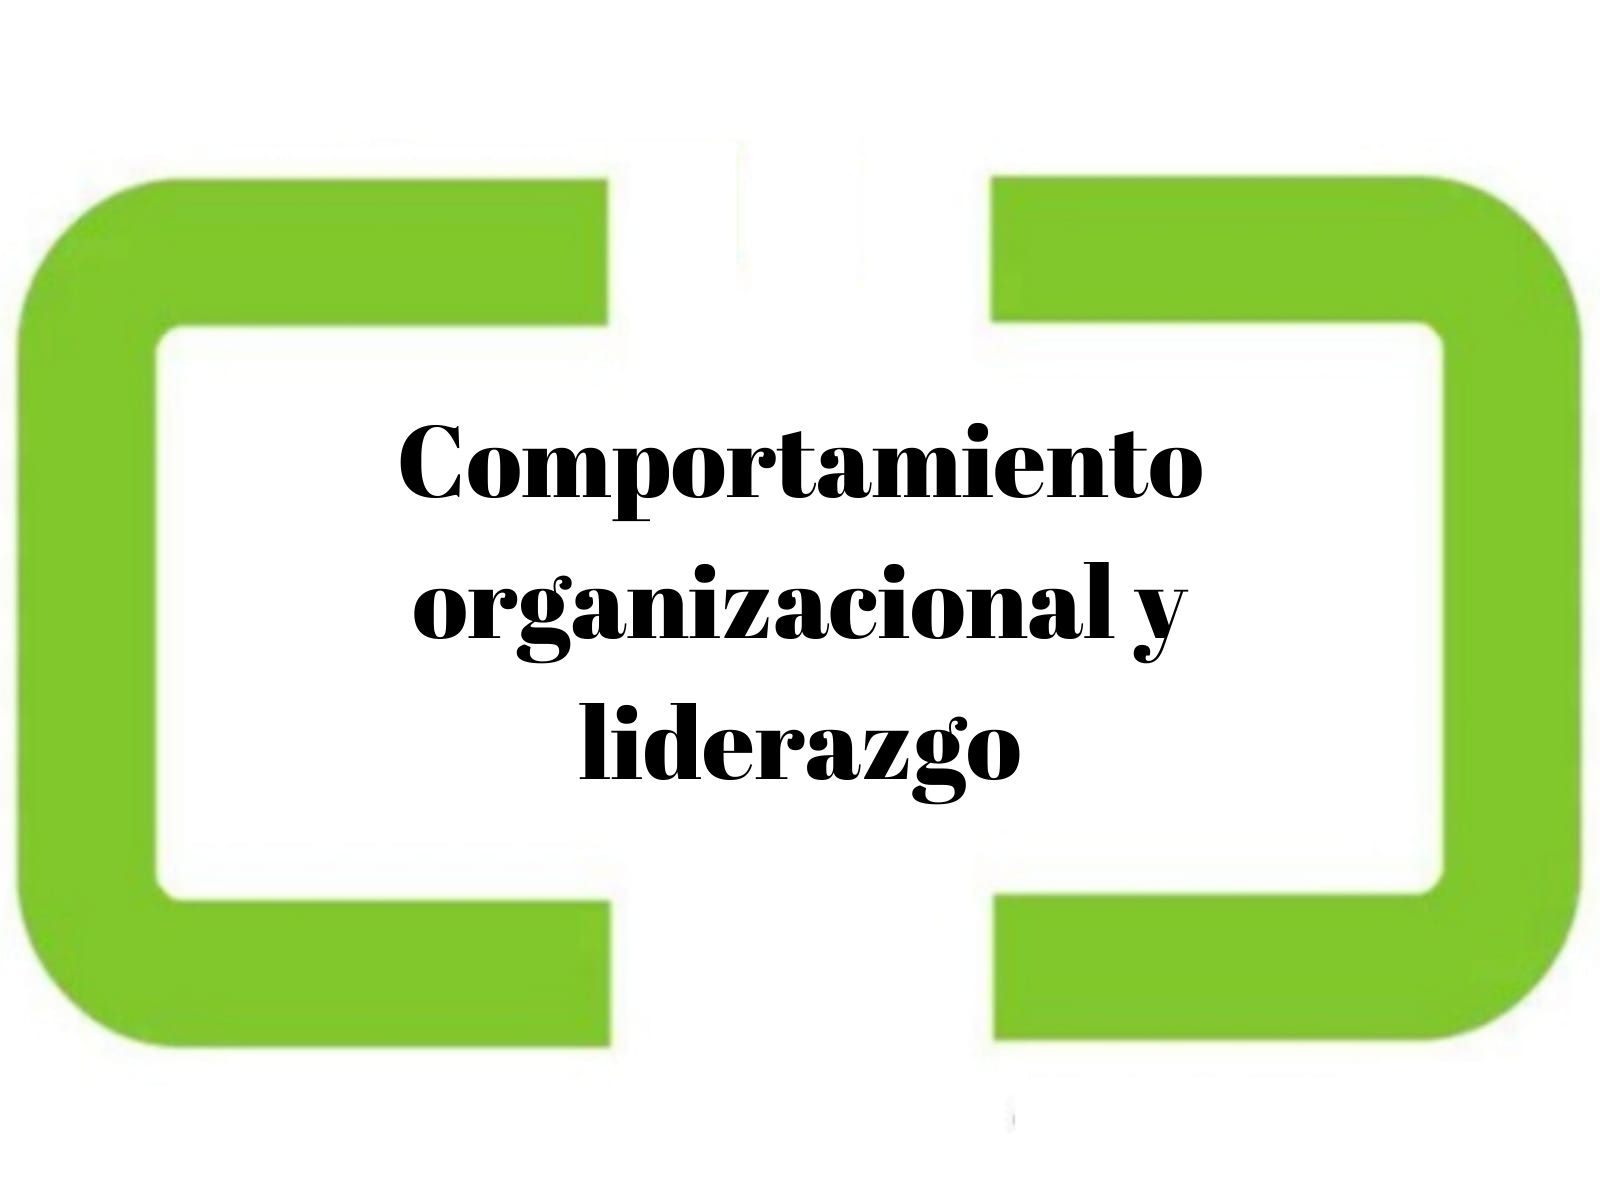 Comportamiento organizacional y liderazgo